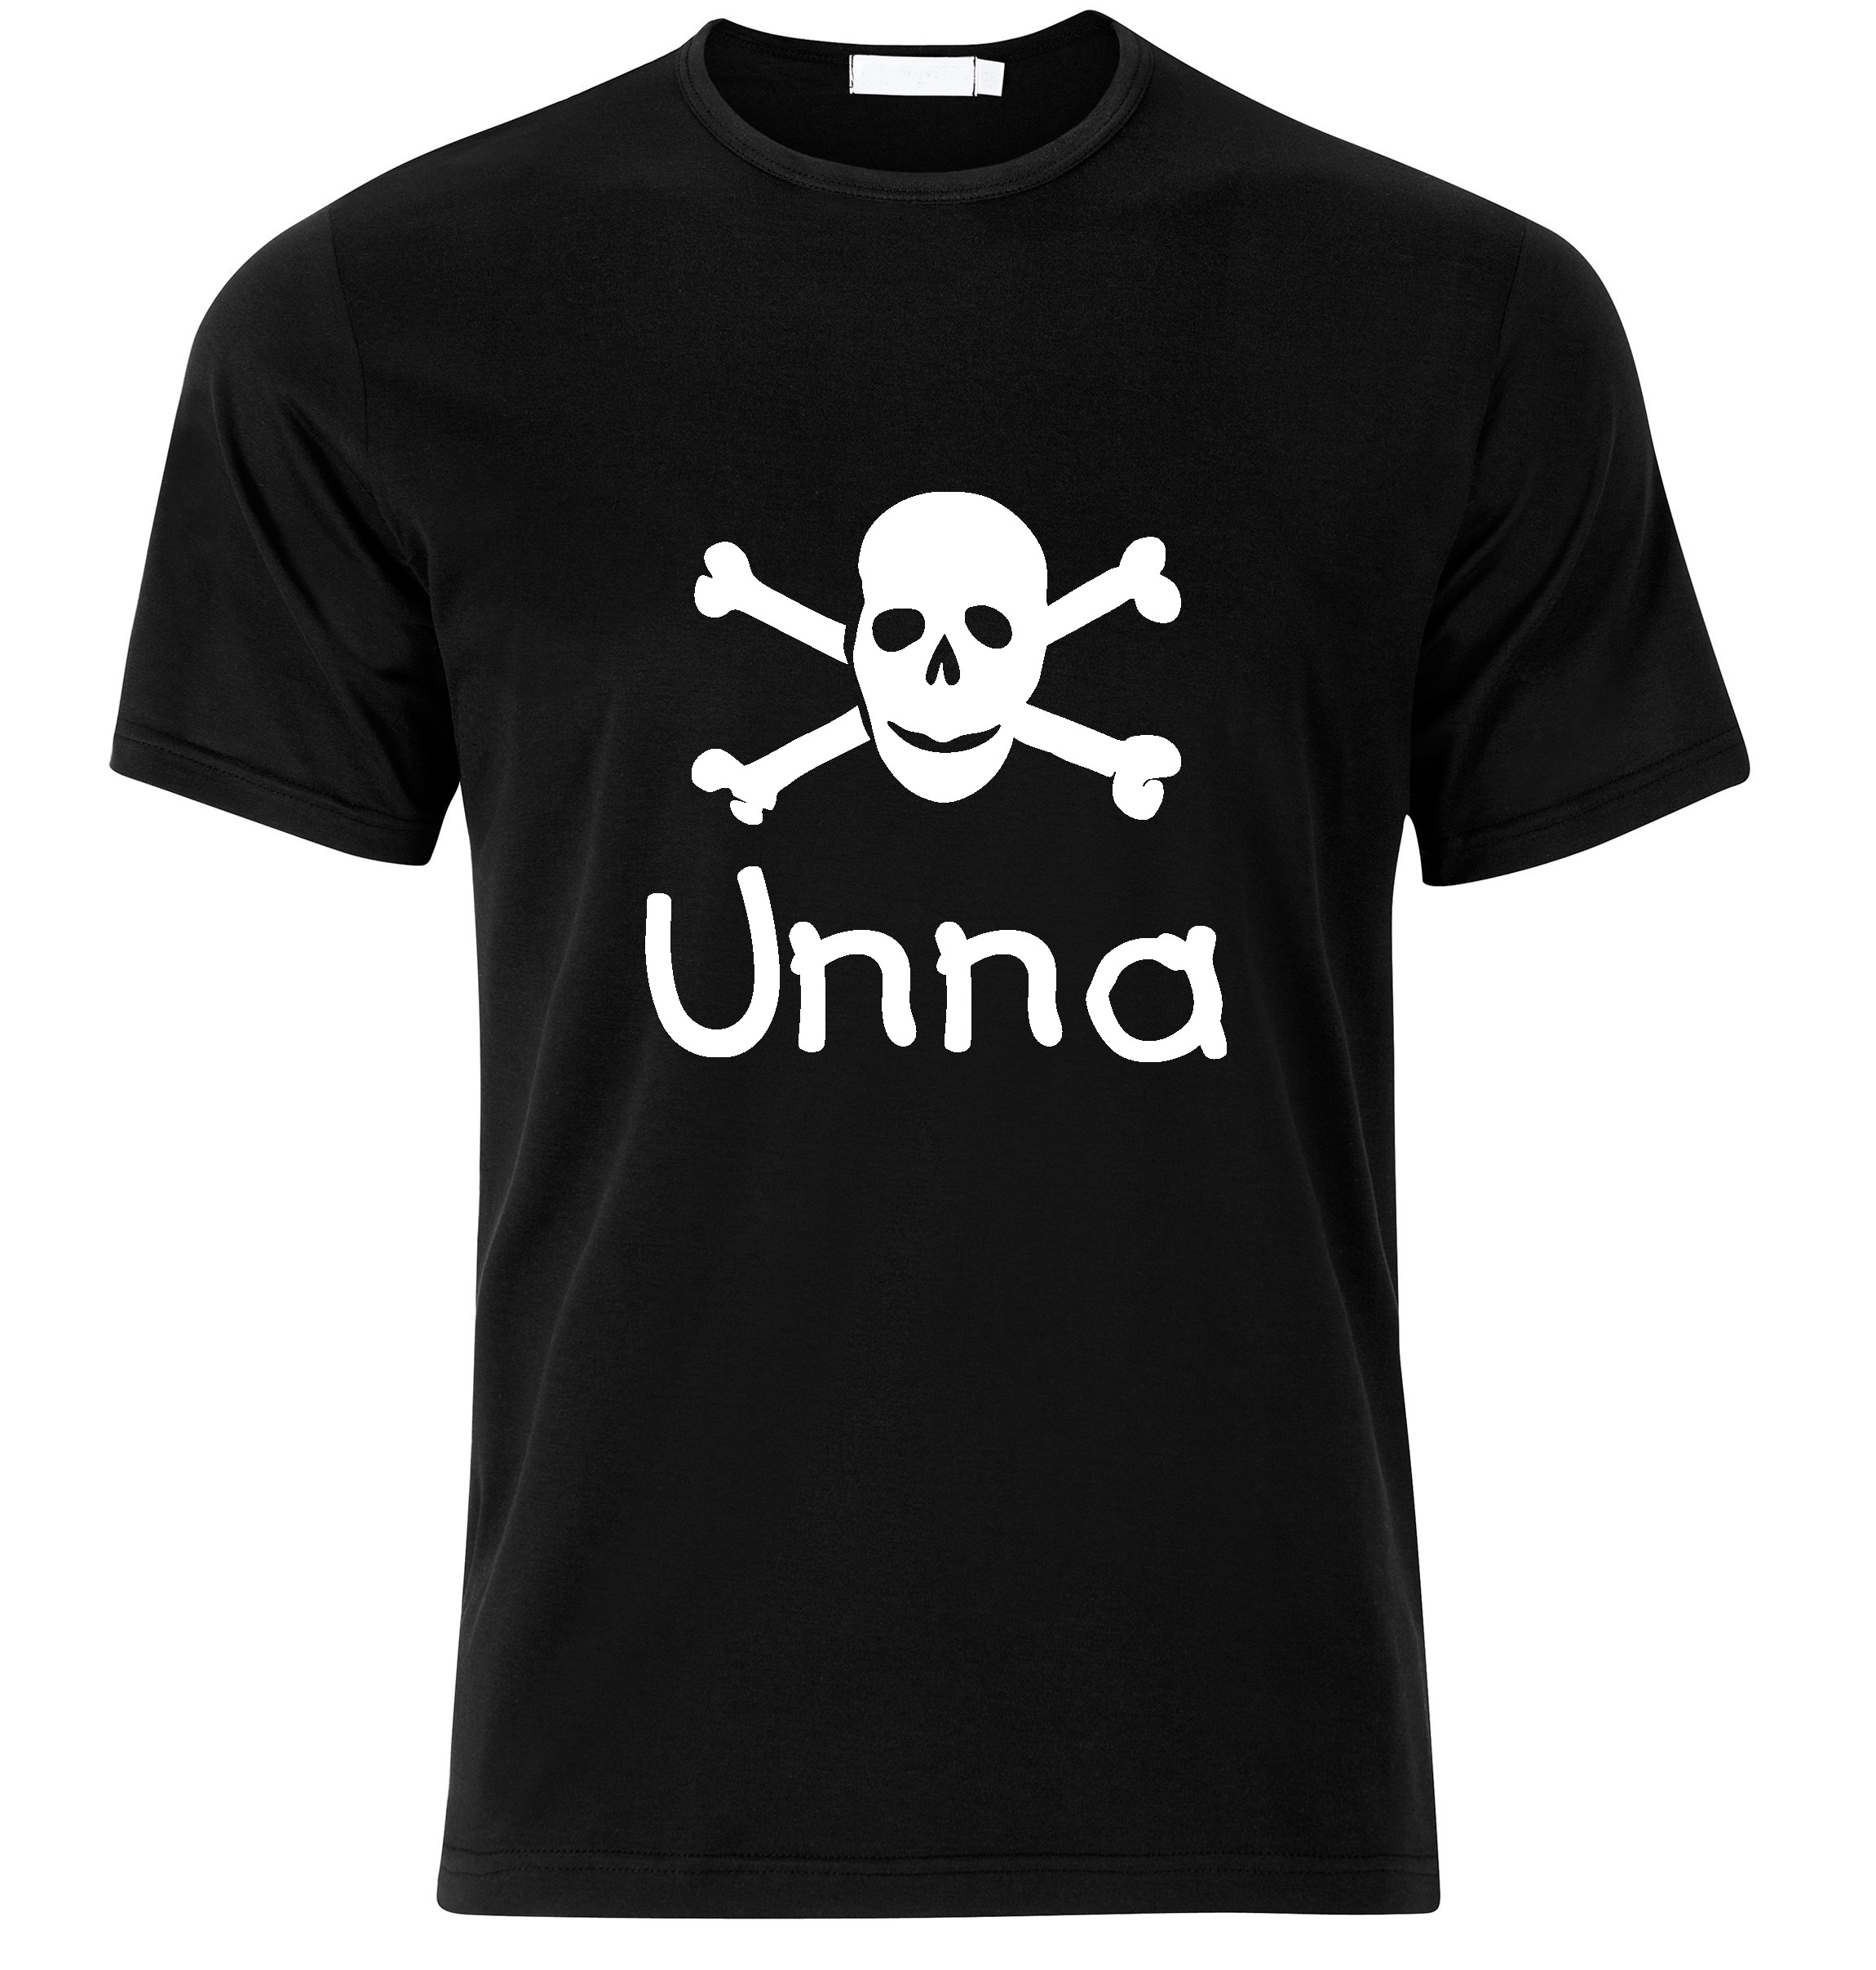 T-Shirt Unna Jolly Roger, Totenkopf